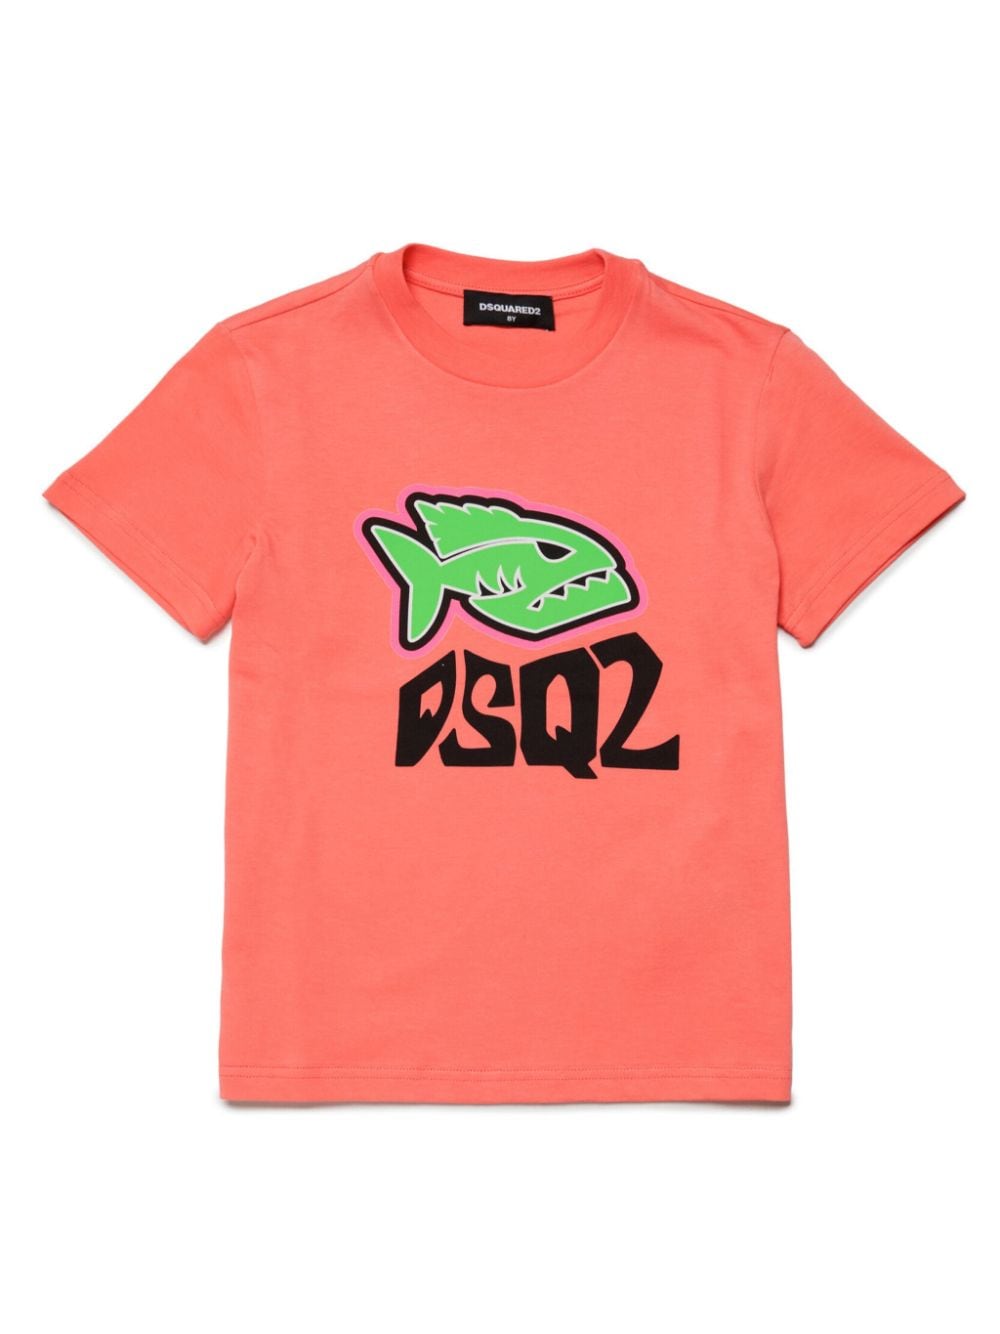 T-shirt arancione per bambino con logo